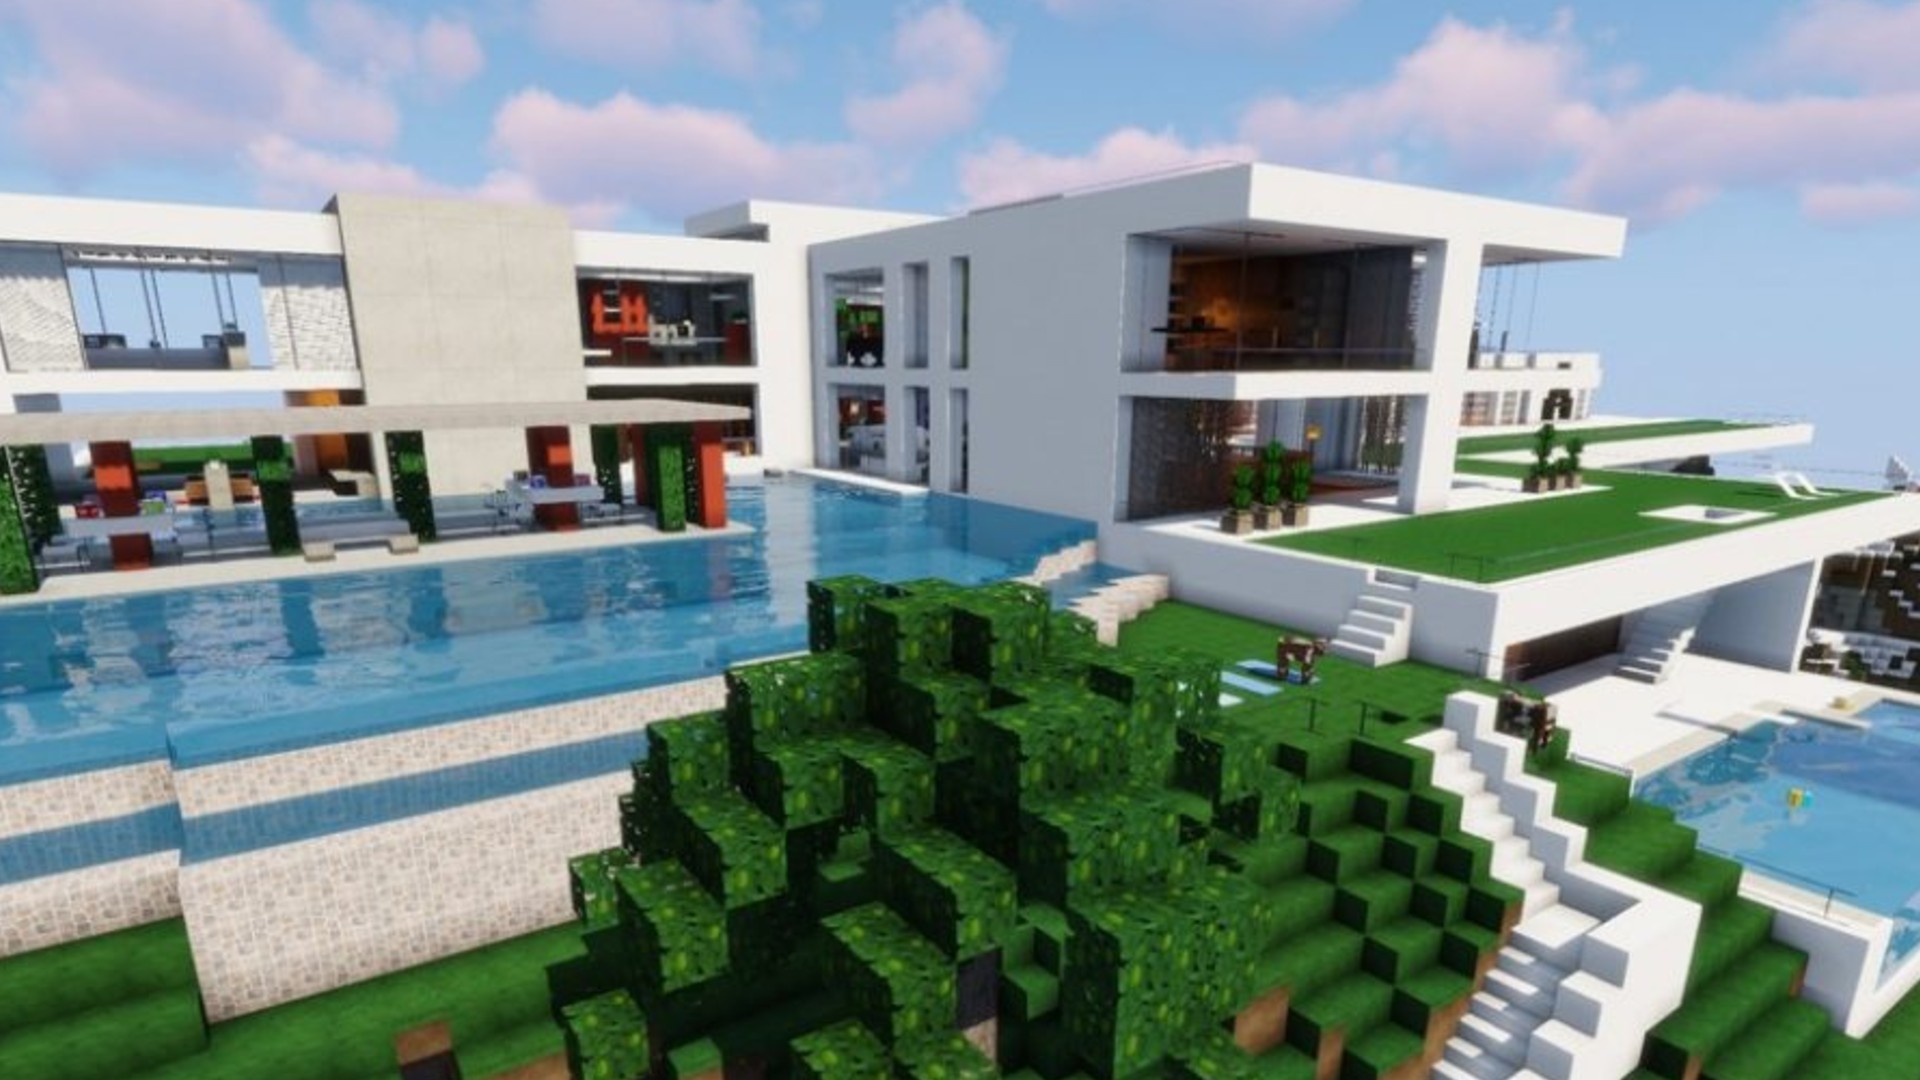 Minecraft House Designs Simple 16 Best Minecraft Interior House Designs